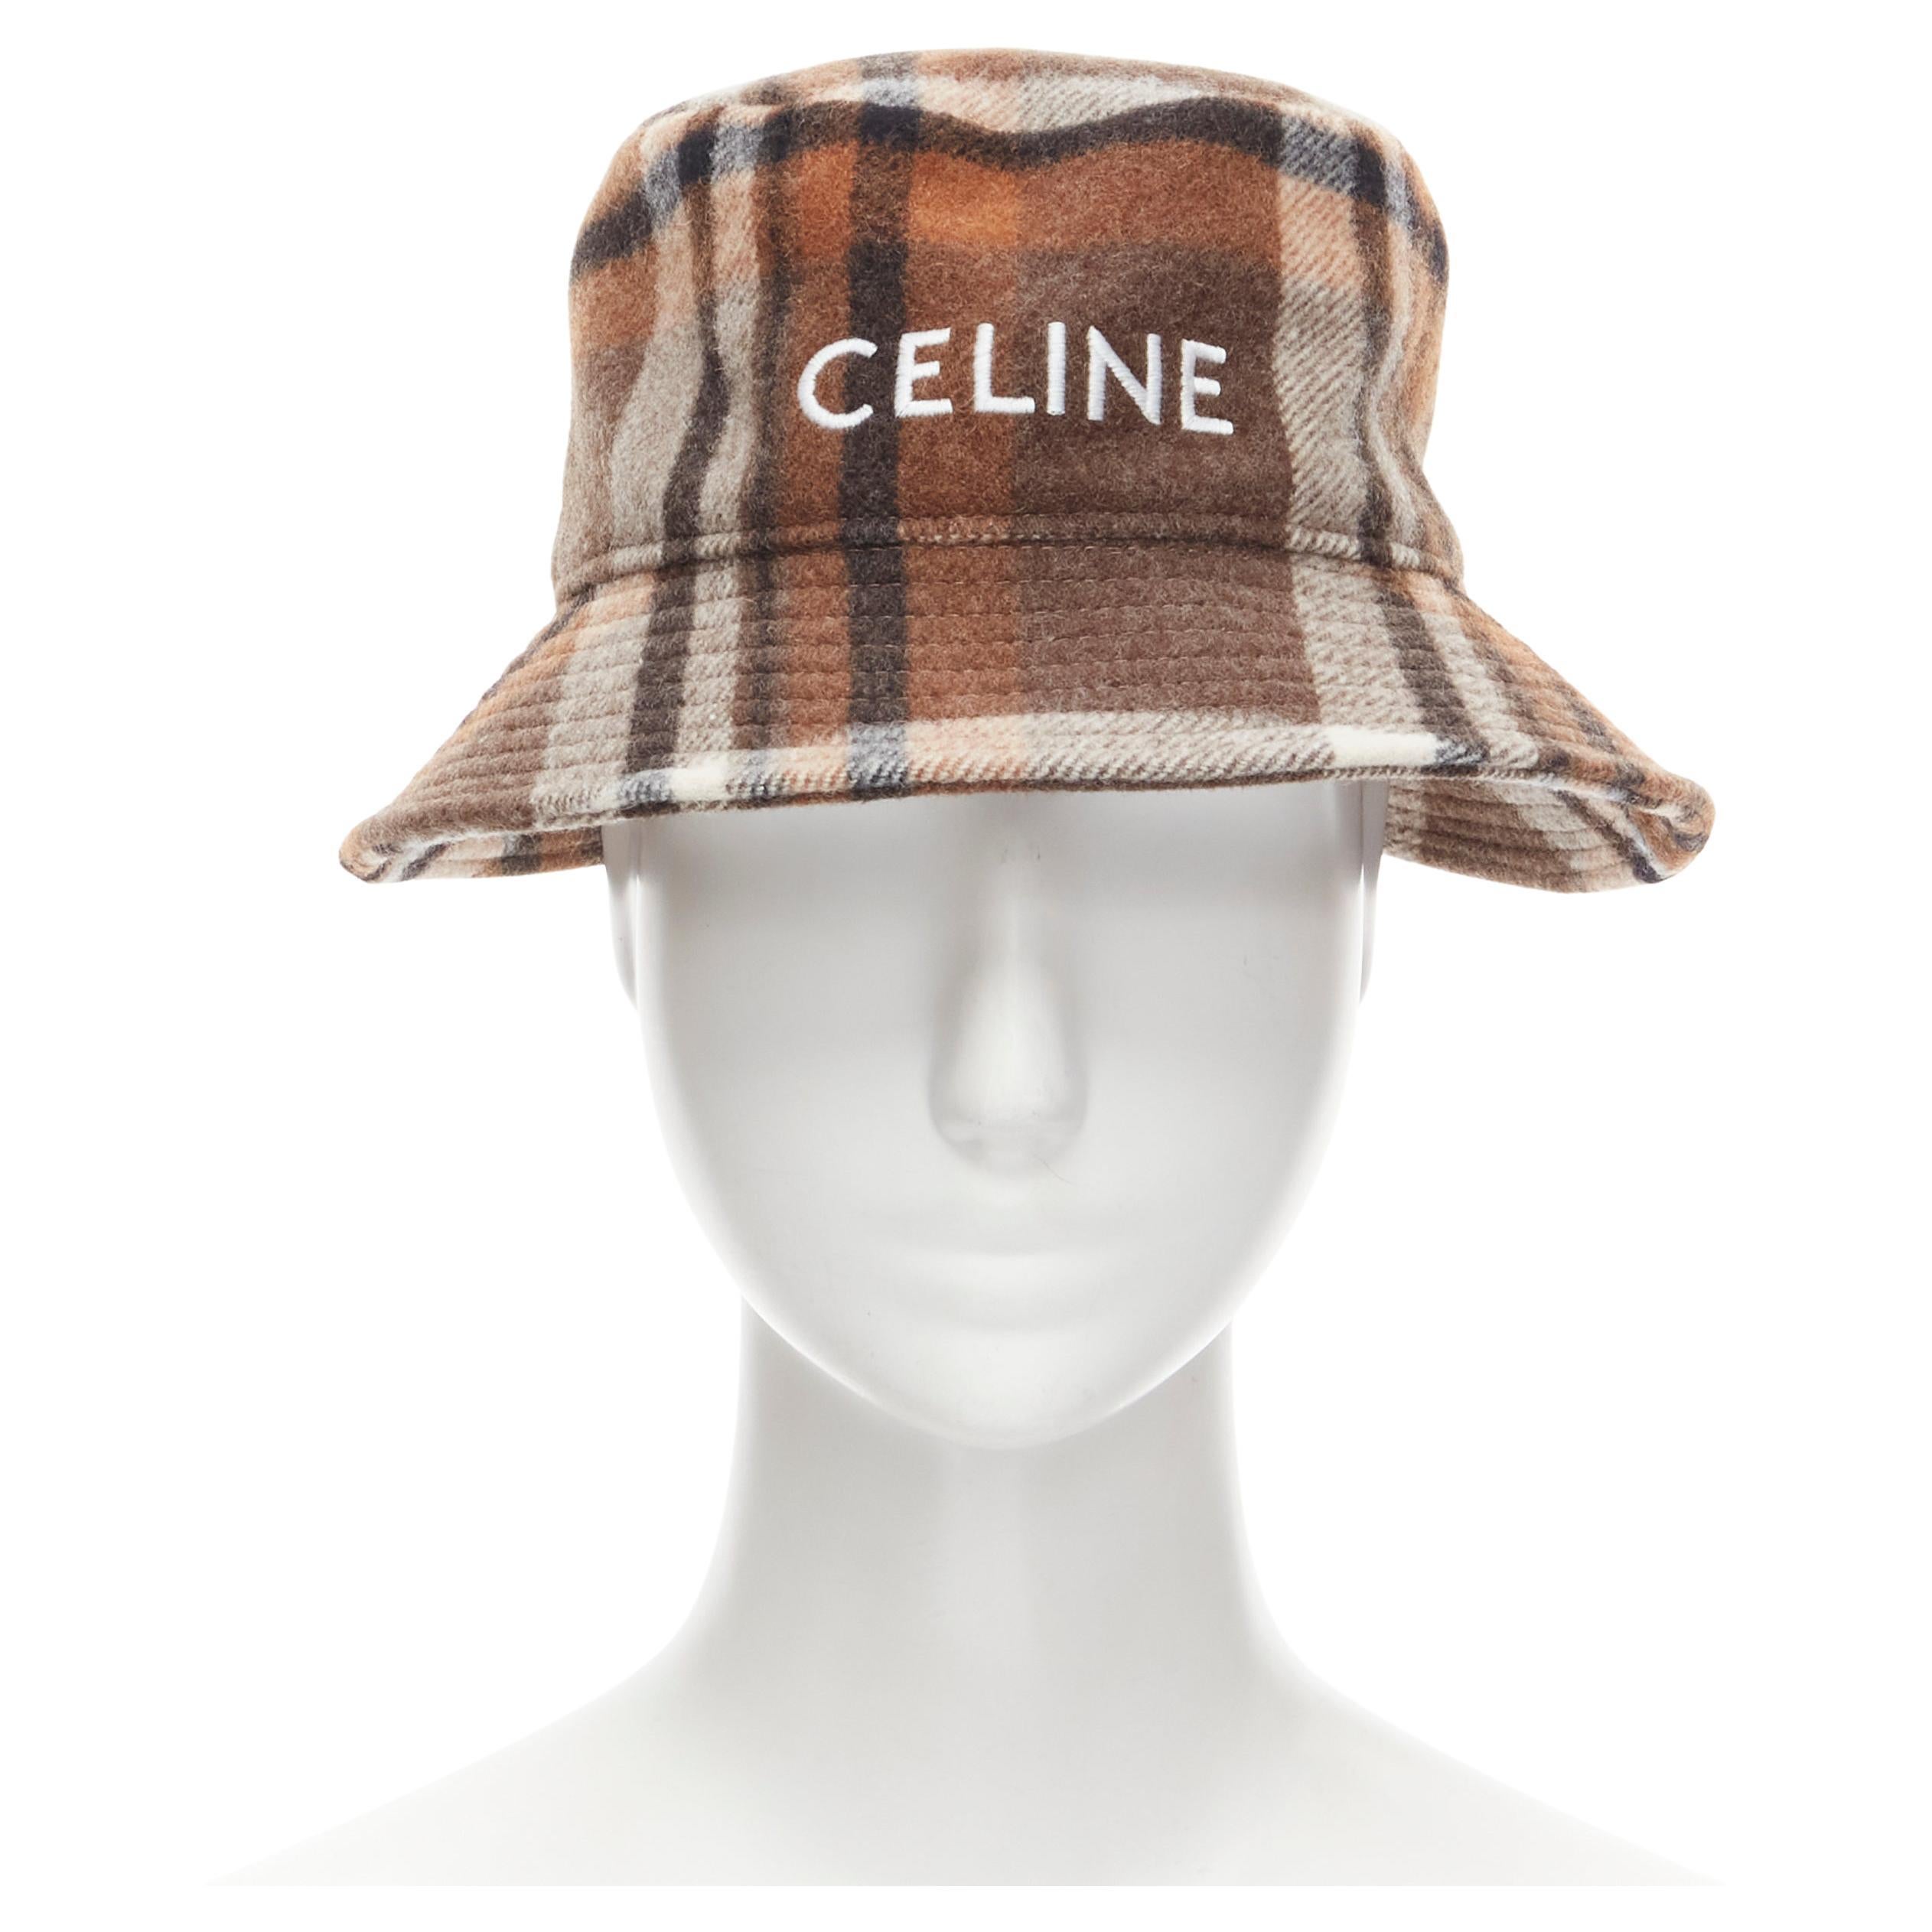 Celine Bucket Hat - For Sale on 1stDibs | celine hat sale, celine cloche  bucket hat, celine denim bucket hat